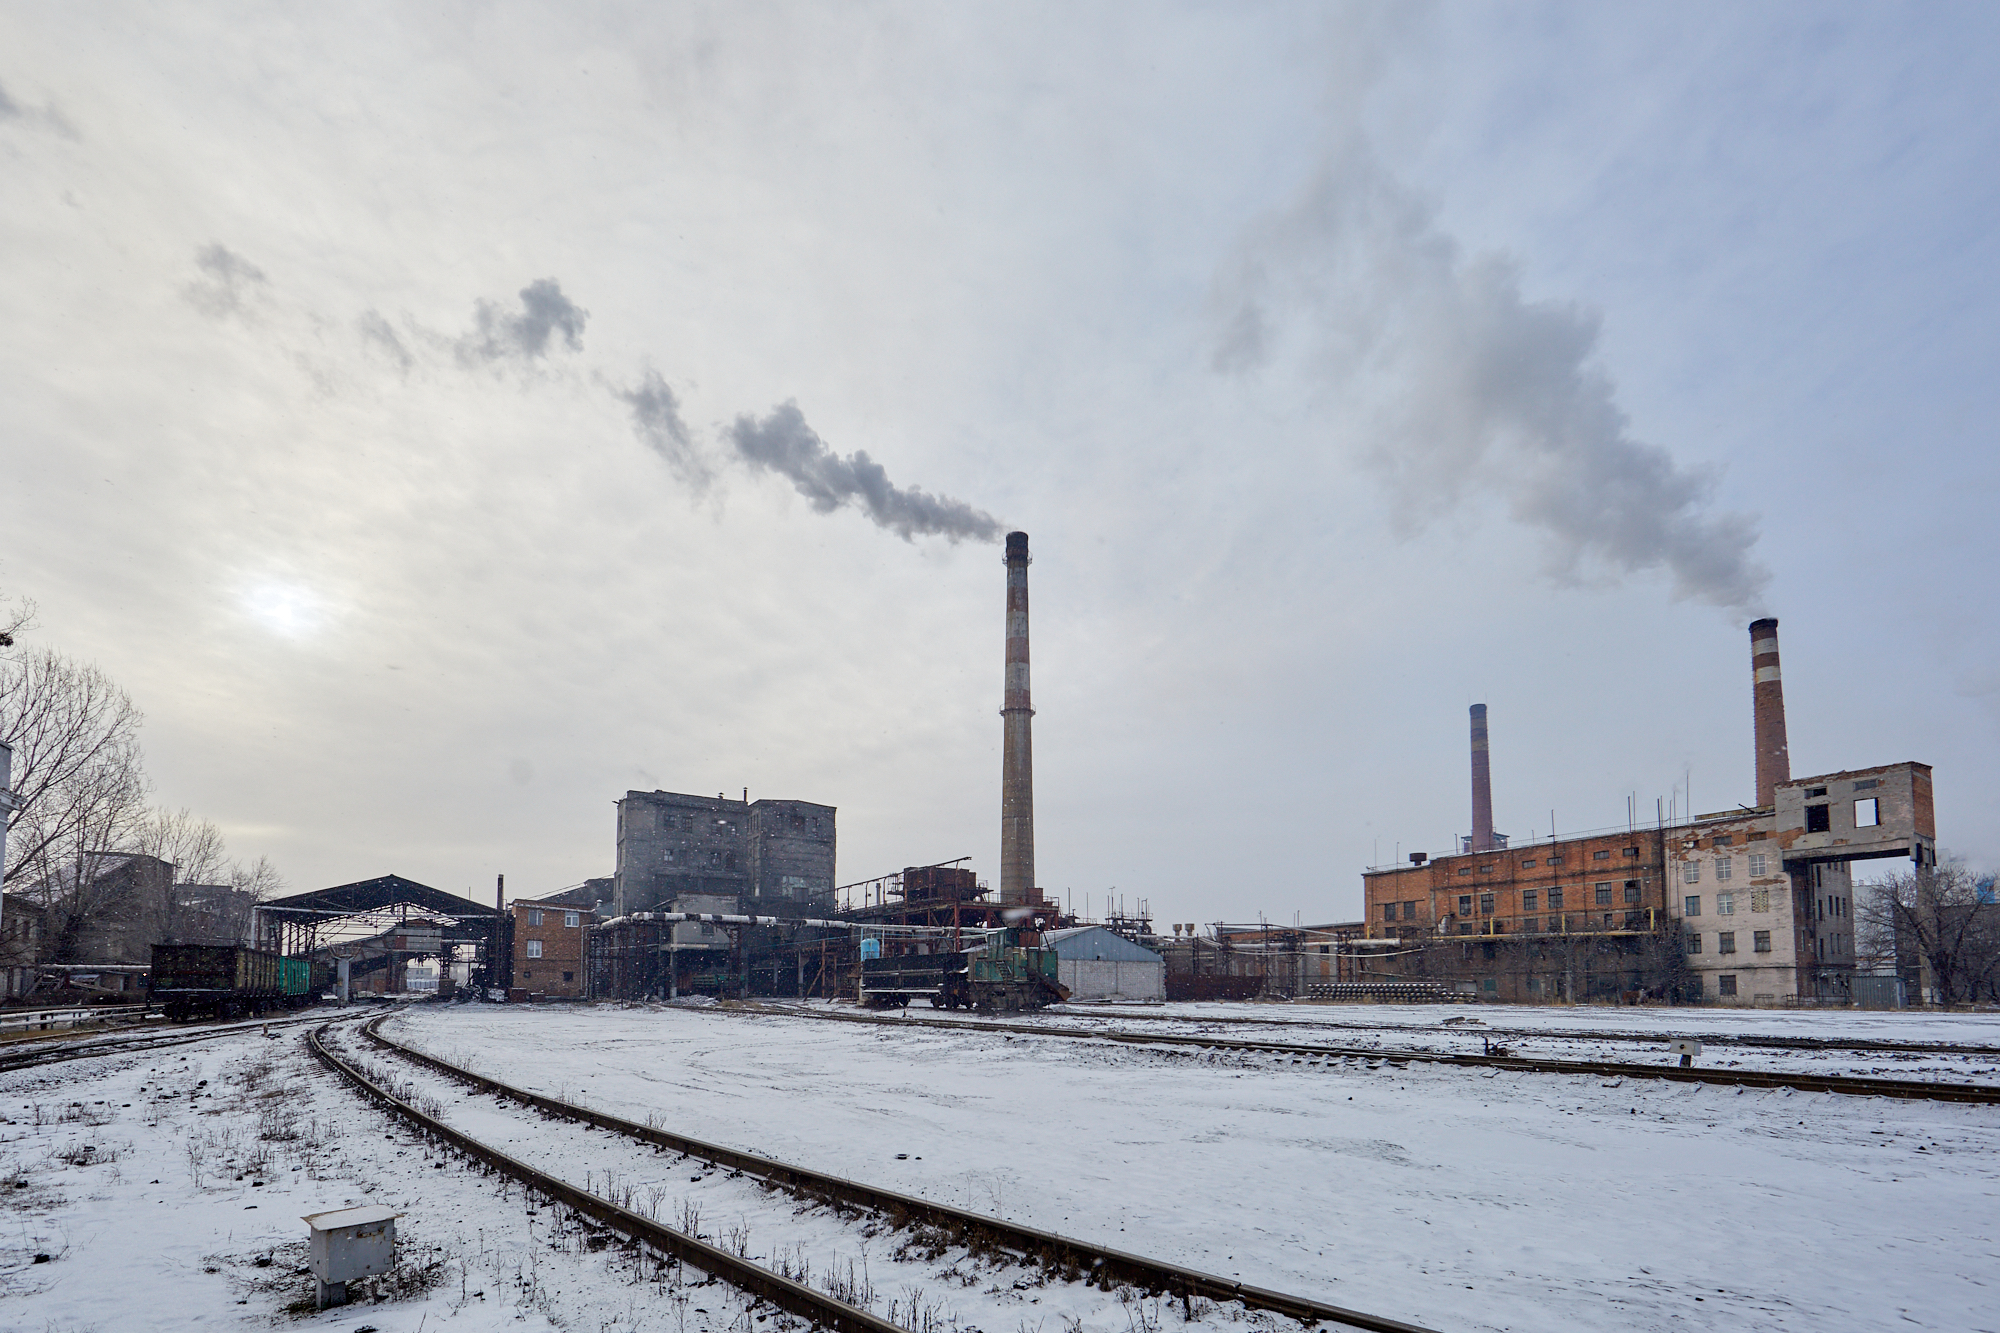 Харьковский завод «Новомет» за год рекордно снизил выбросы вредных веществ